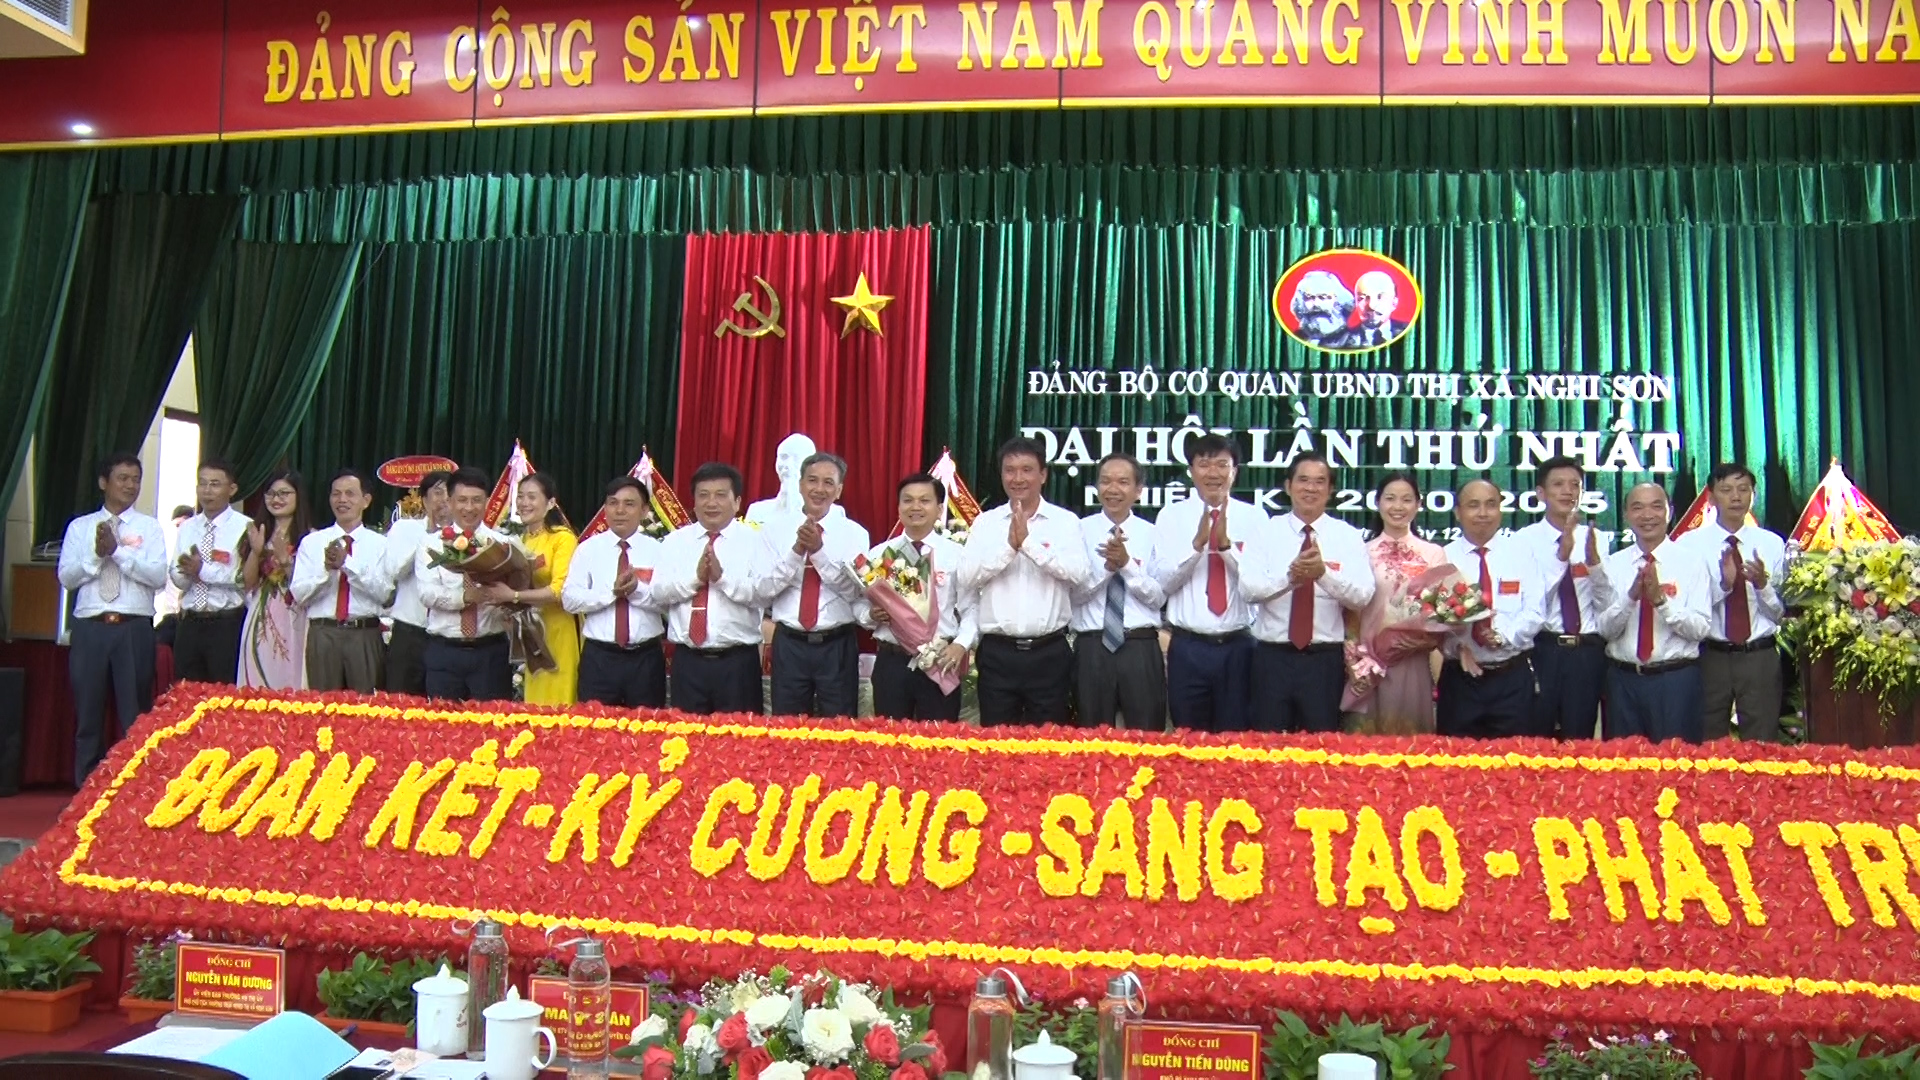 Đảng bộ cơ quan UBND thị xã Nghi Sơn “Đoàn kết- Kỷ cương- Sáng tạo- Phát triển”